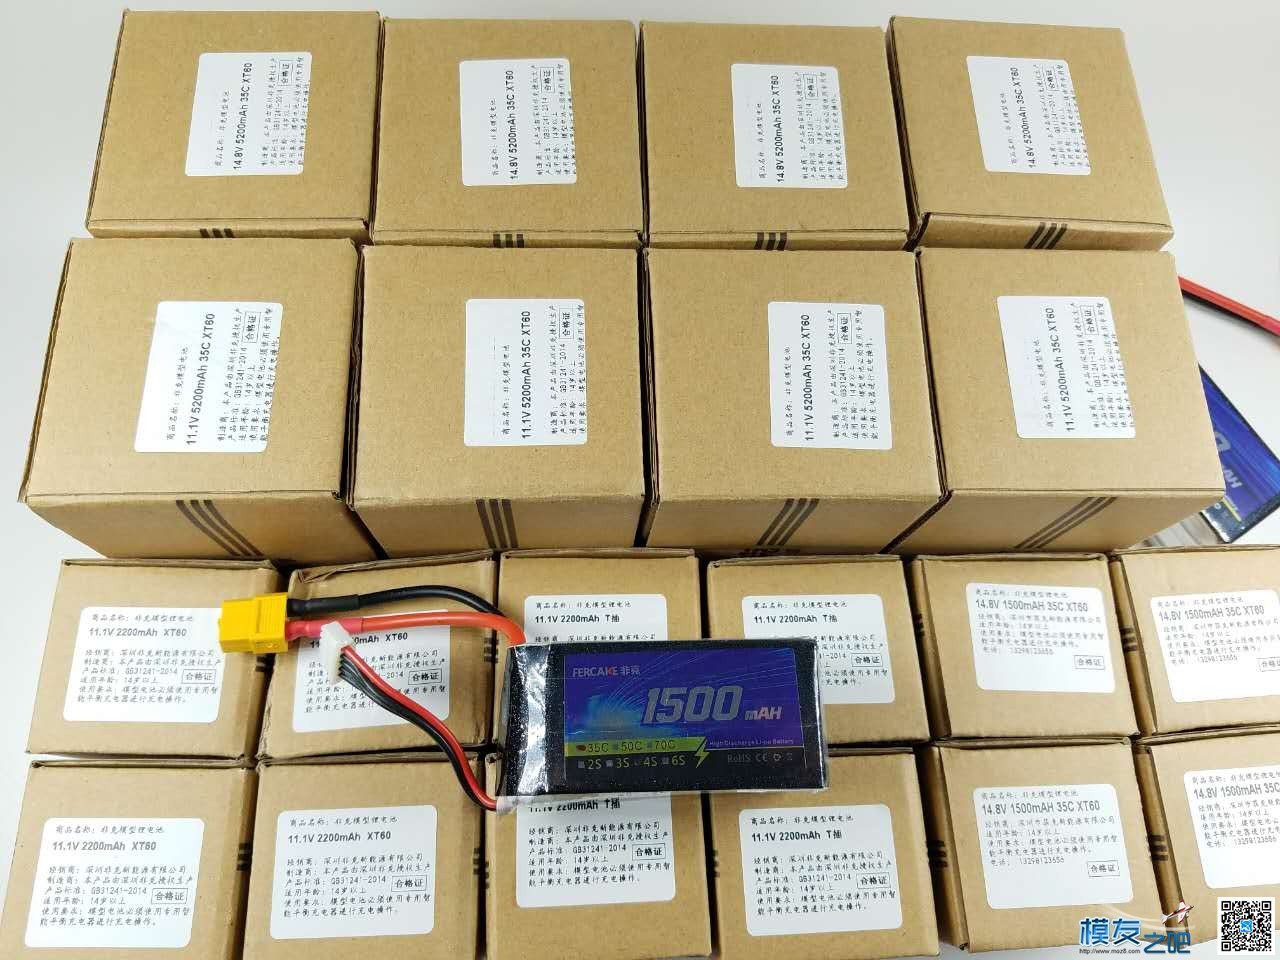 非克电池测试体验活动 电池,非克汽车02,taobao 作者:飞天狼 455 